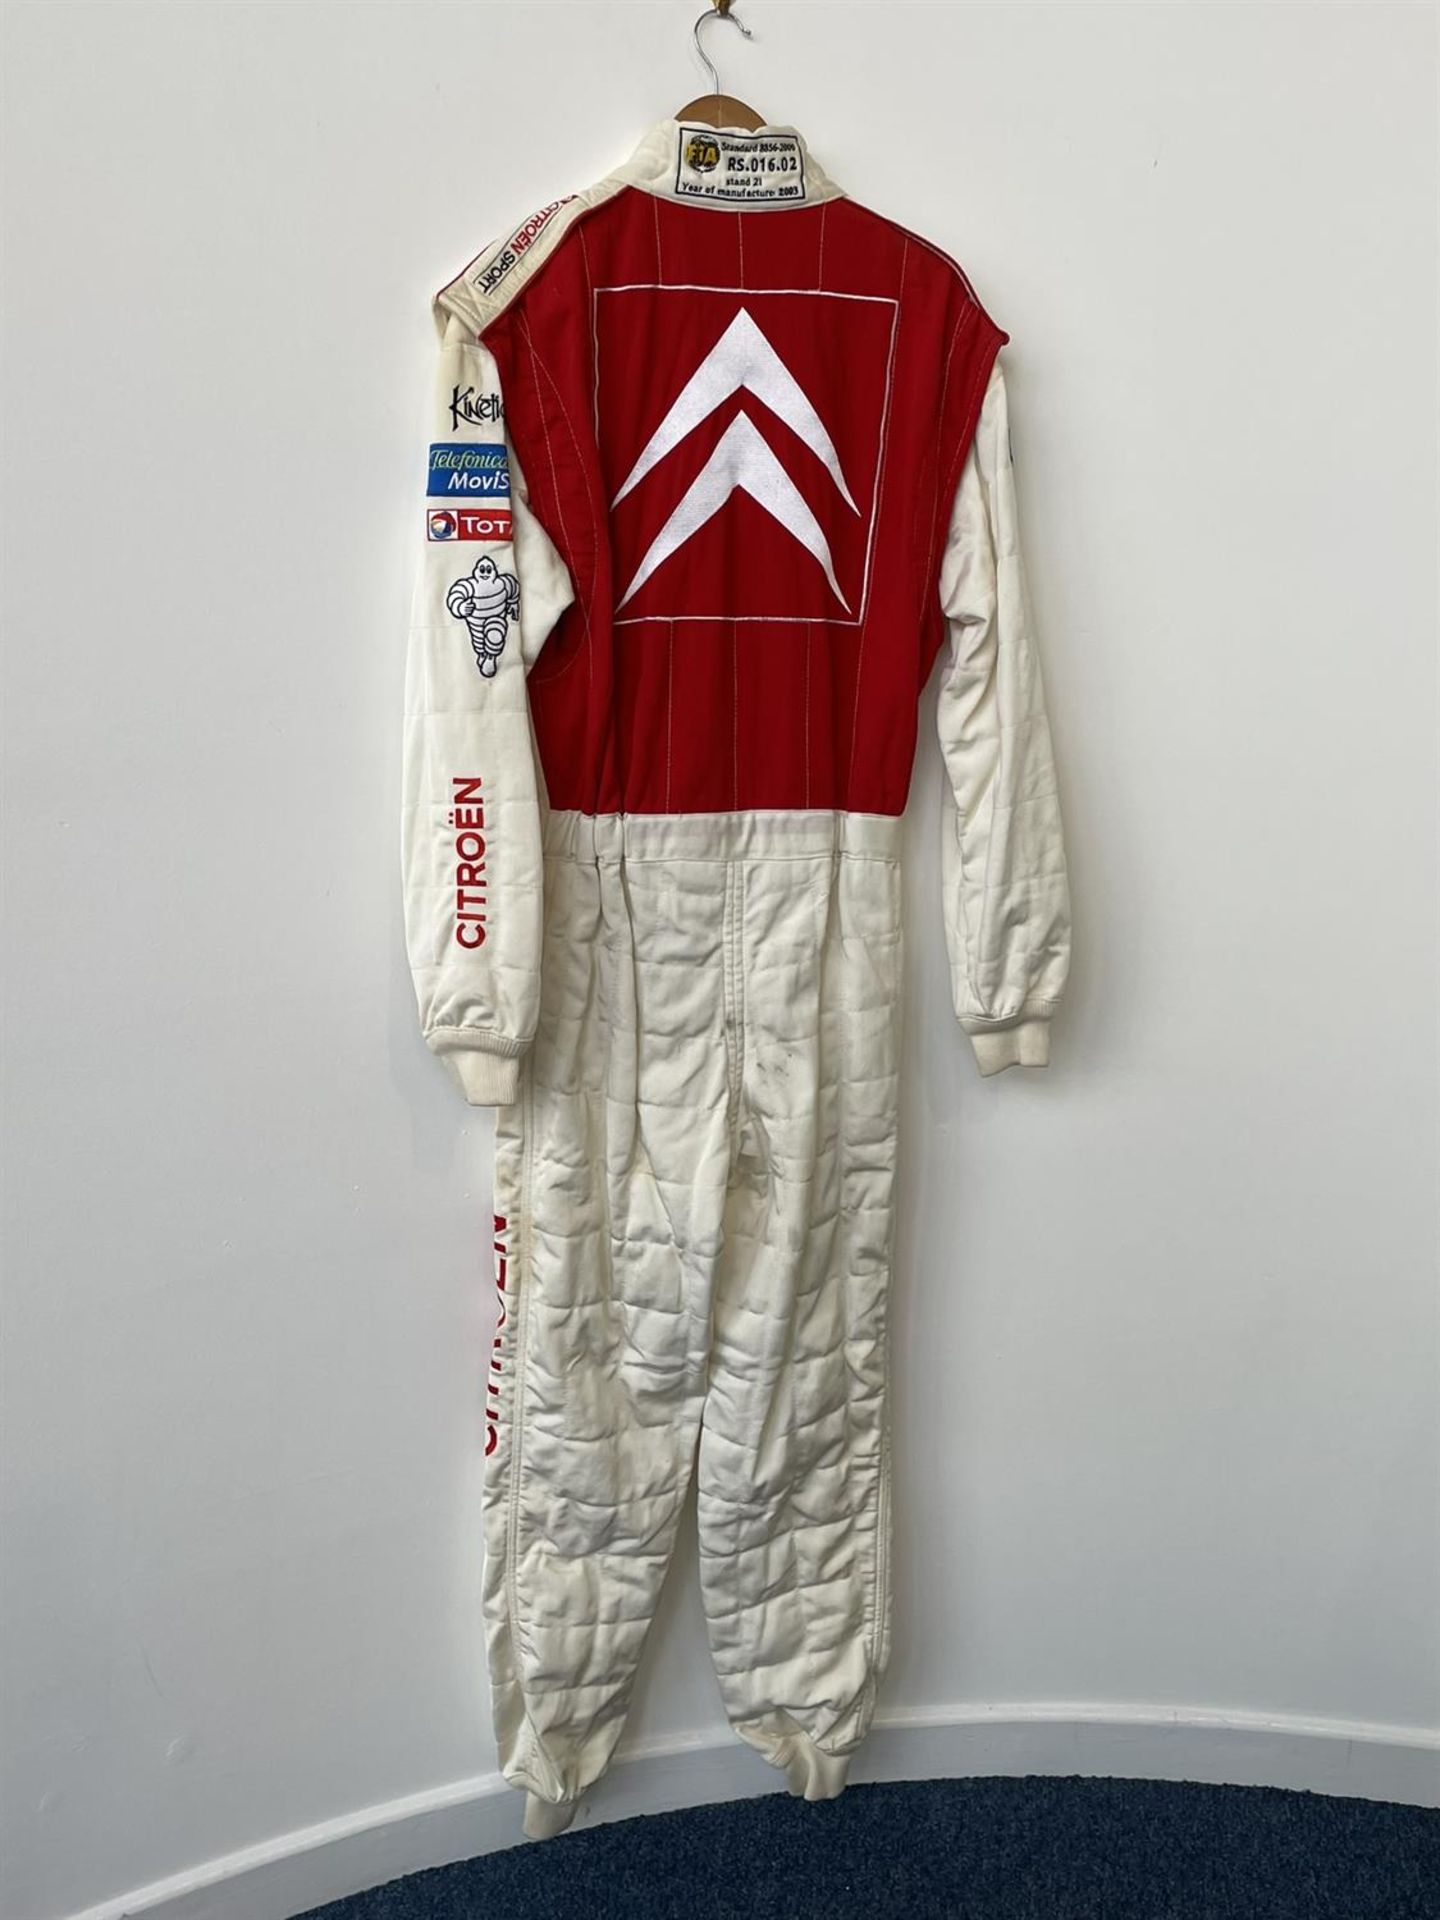 Colin McRae's 2003 Citroen Race Suit - Image 3 of 5